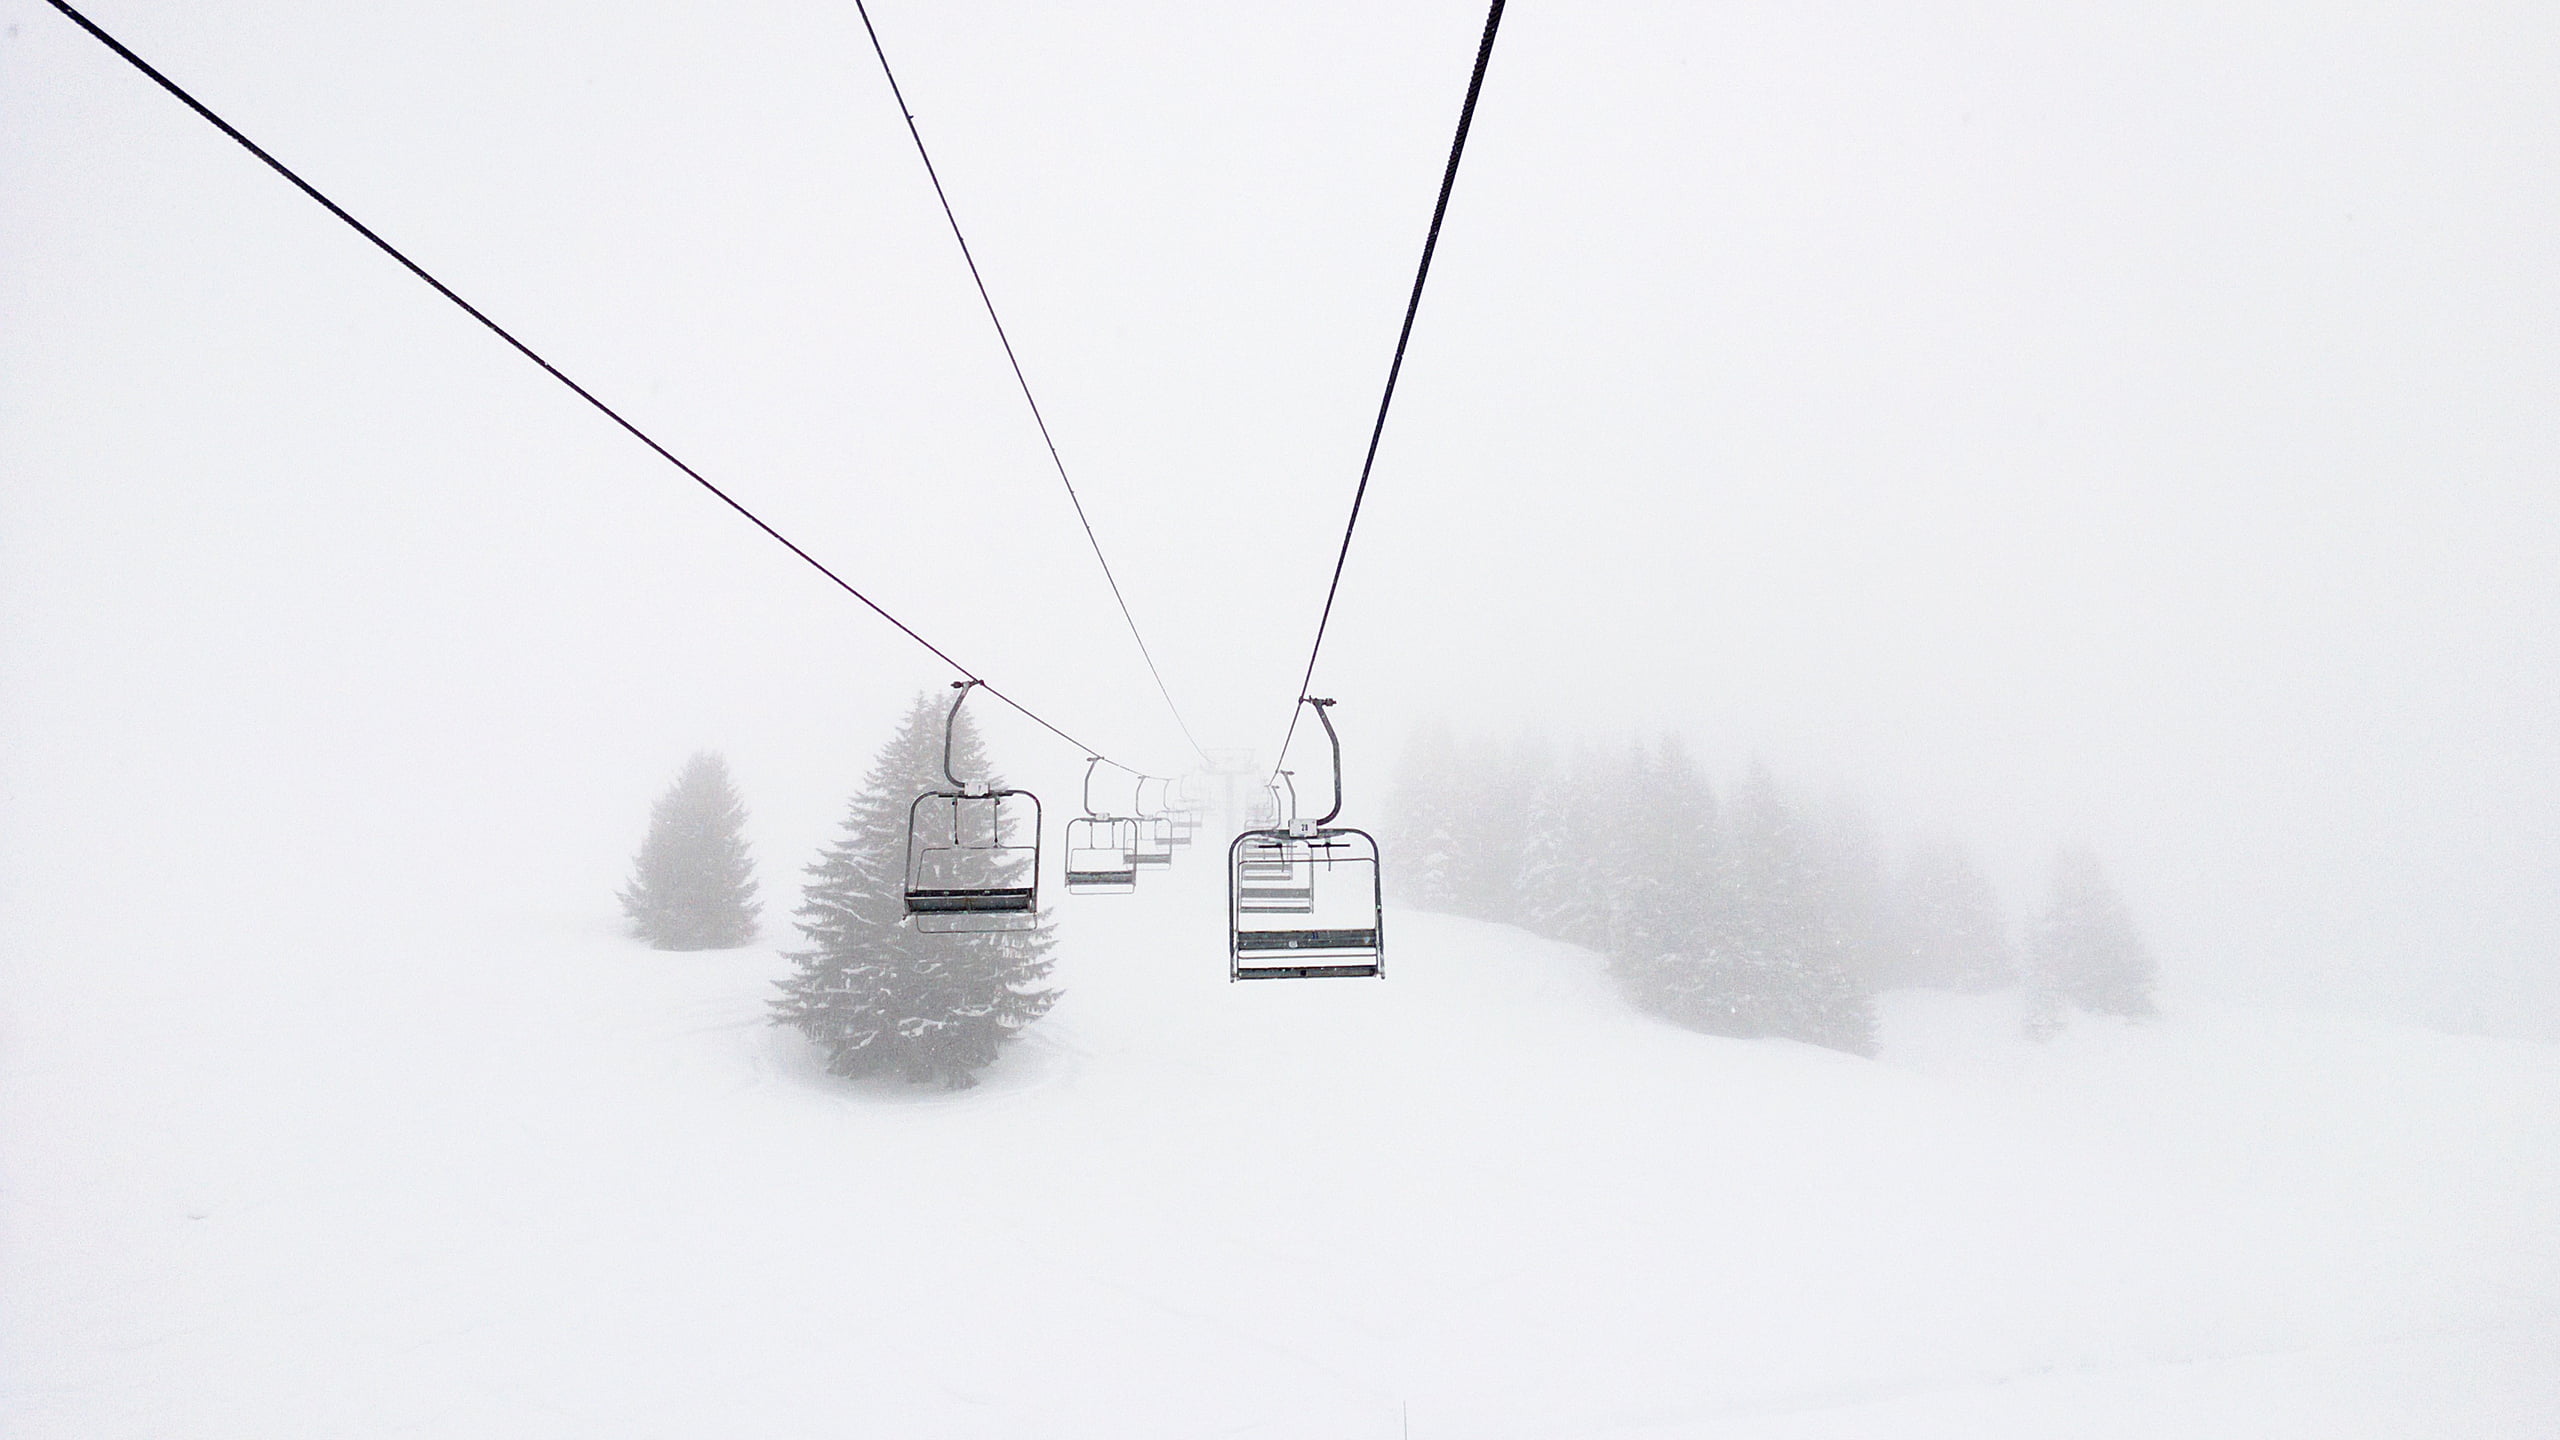 black ski lif, snow, ski lift, ski lifts, pine trees